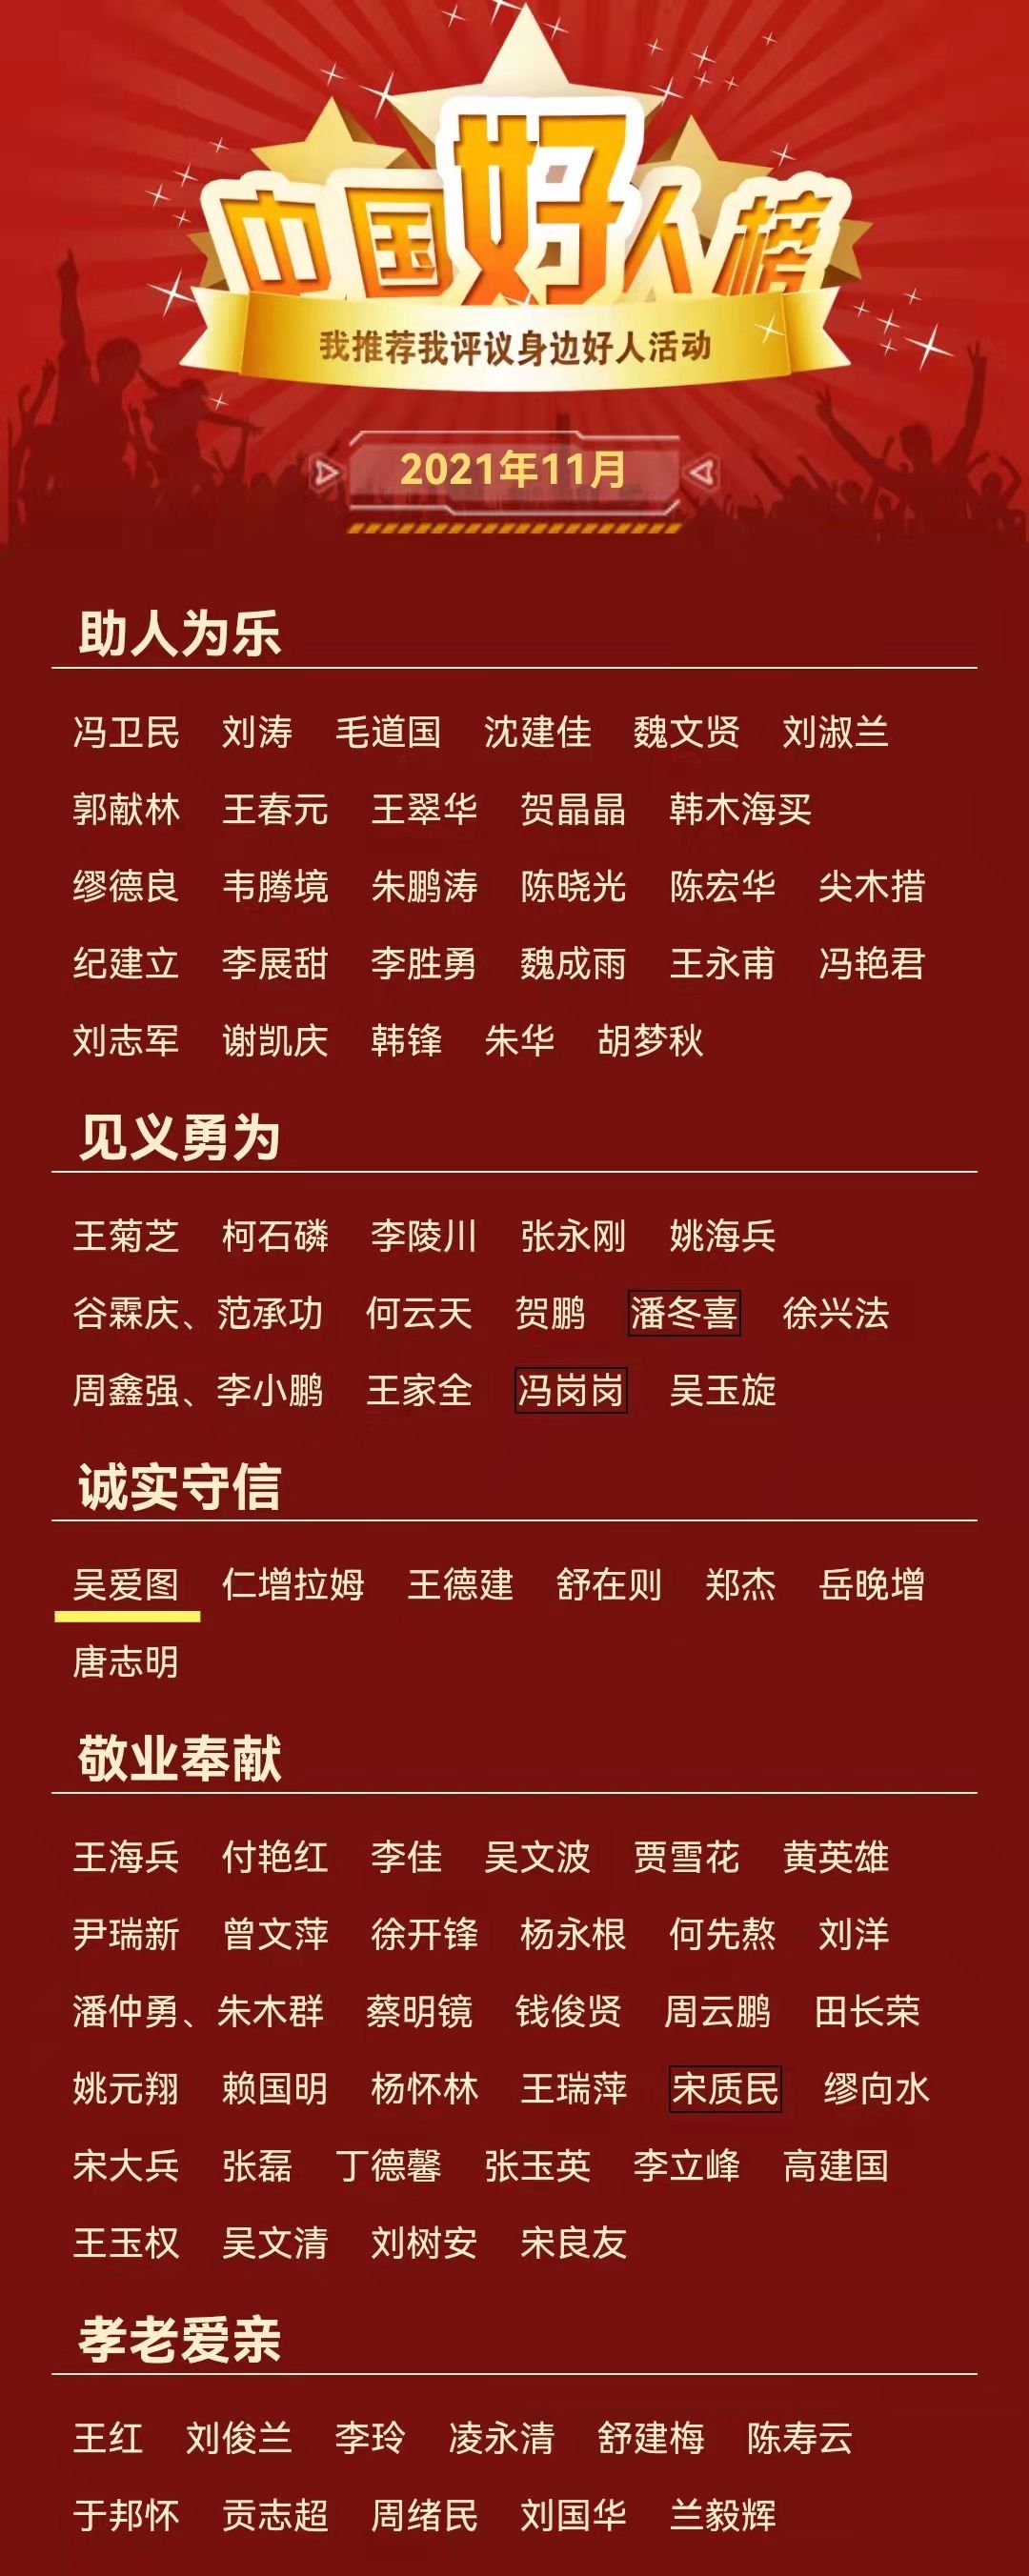 评议|象山女船长吴爱图光荣上榜！中央文明办发布2021年11月“中国好人榜”